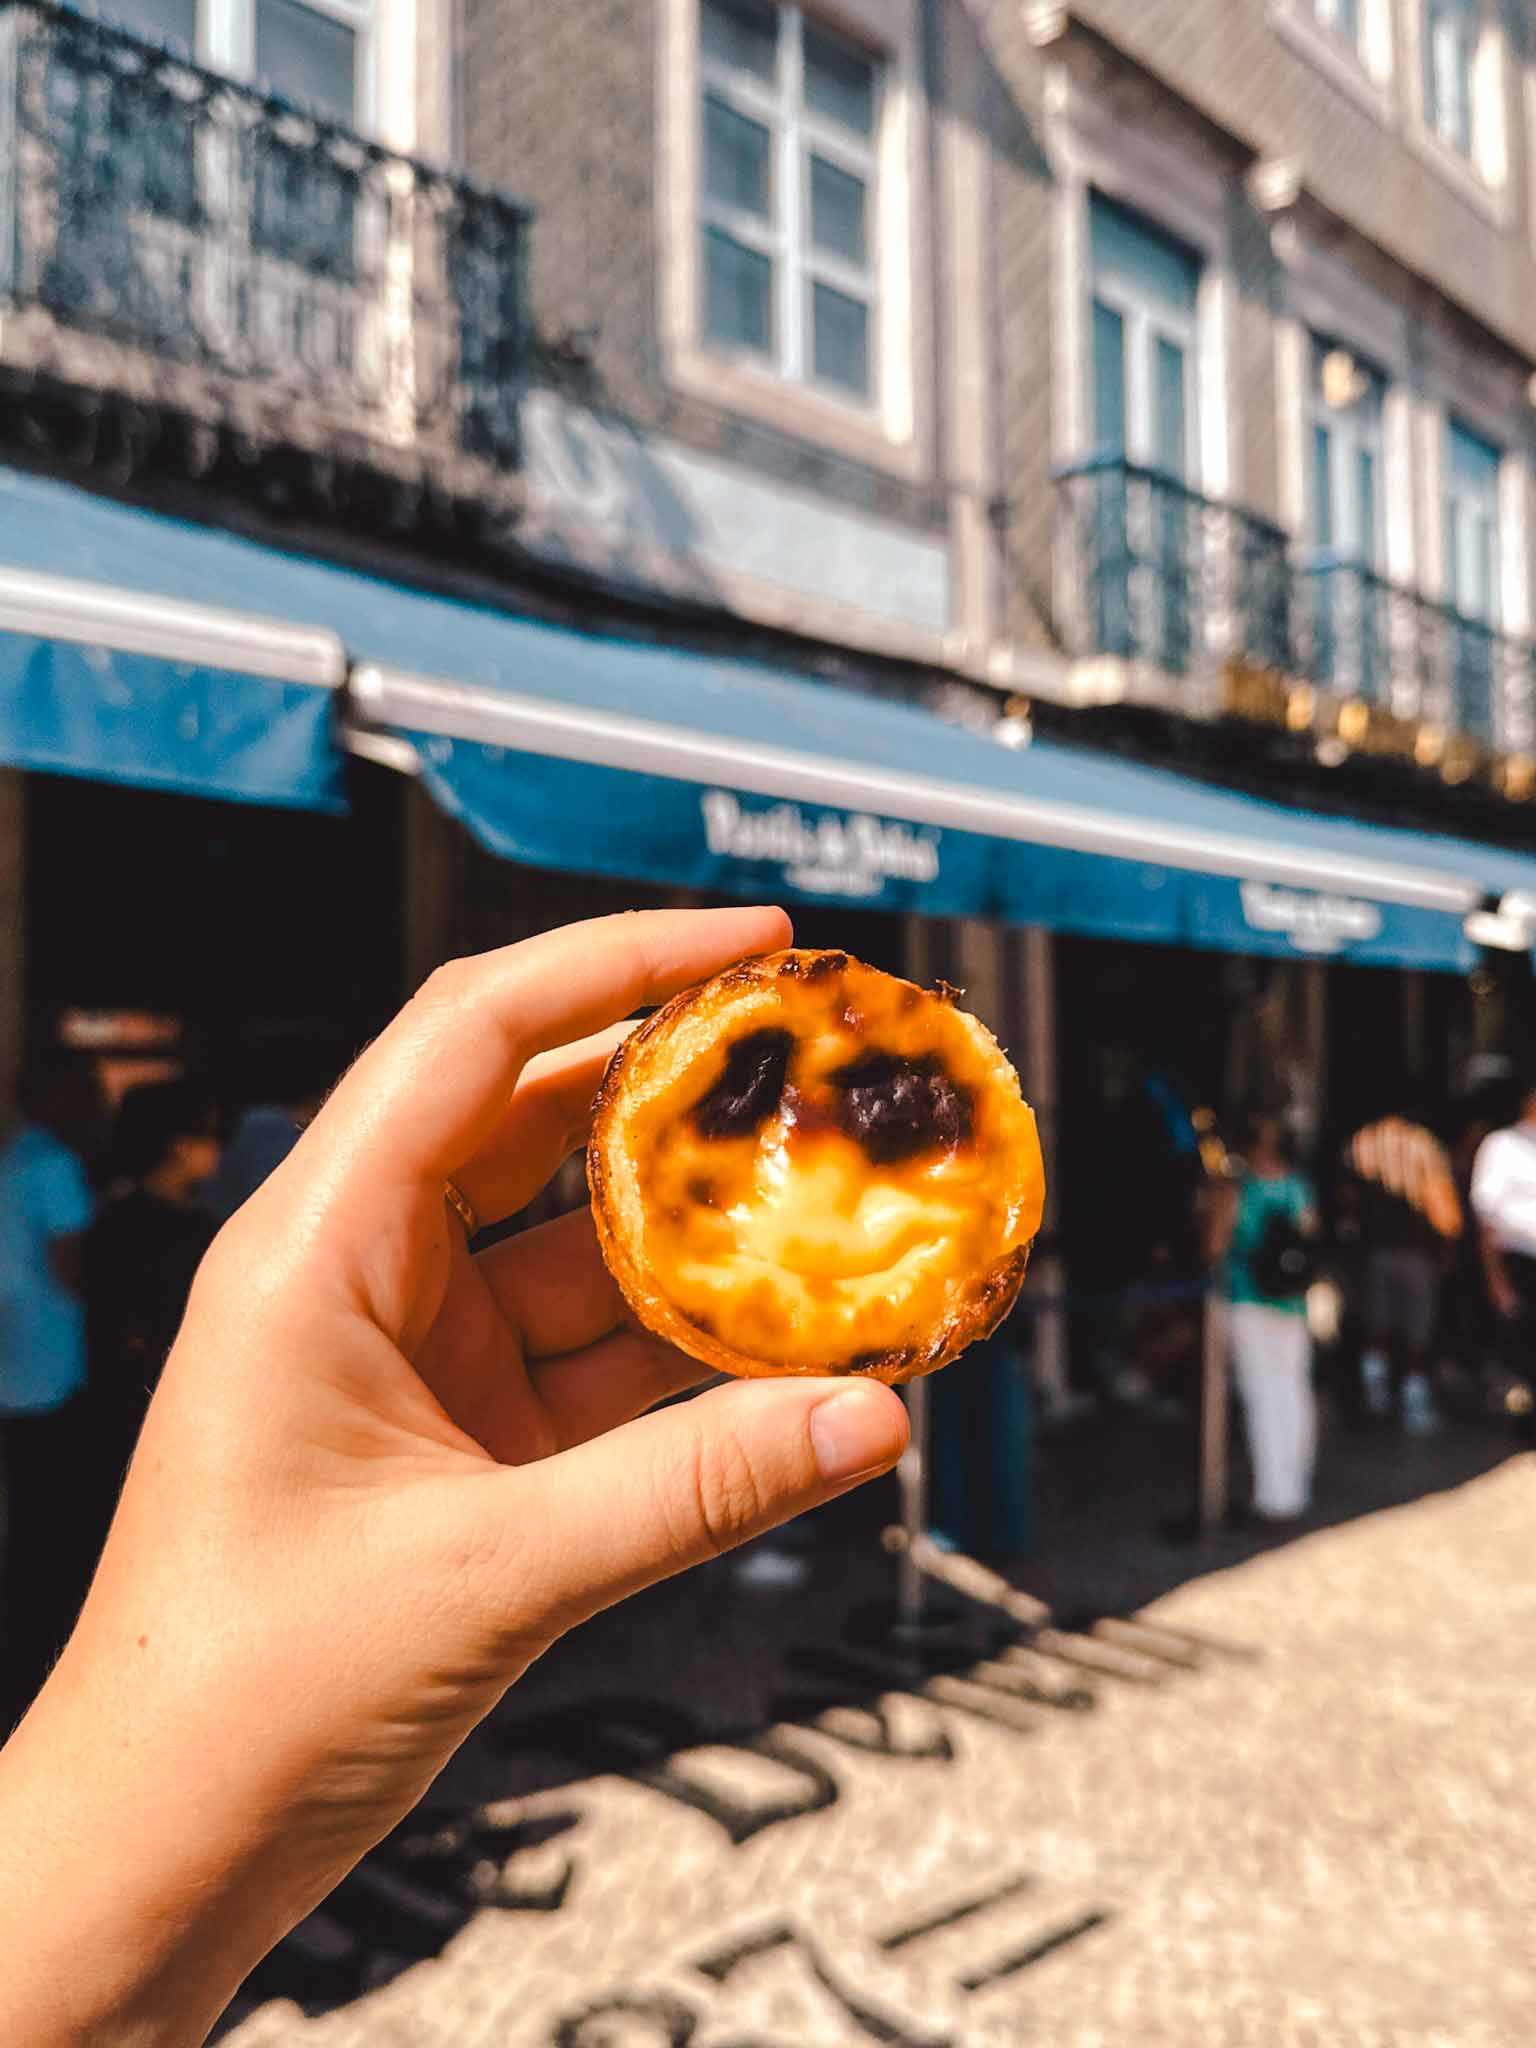 Best pastel de nata in Lisbon - Pastéis de Belém